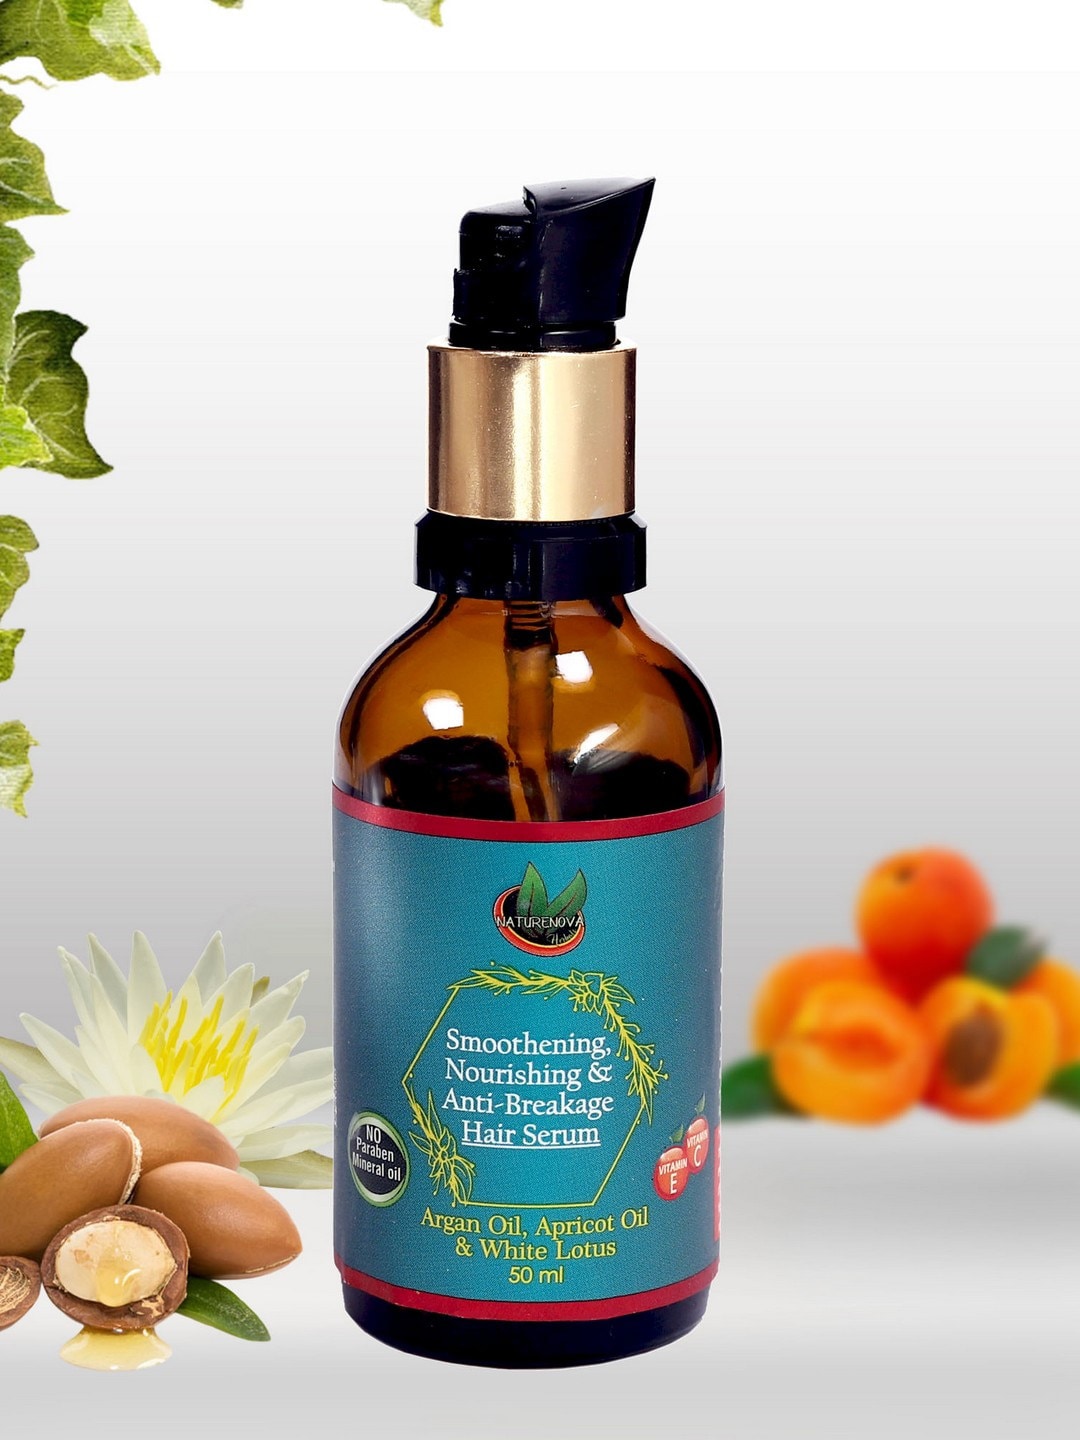 NatureNova Herbals Smoothening Nourishing & Anti-Breakage Hair Serum - 50ml Price in India